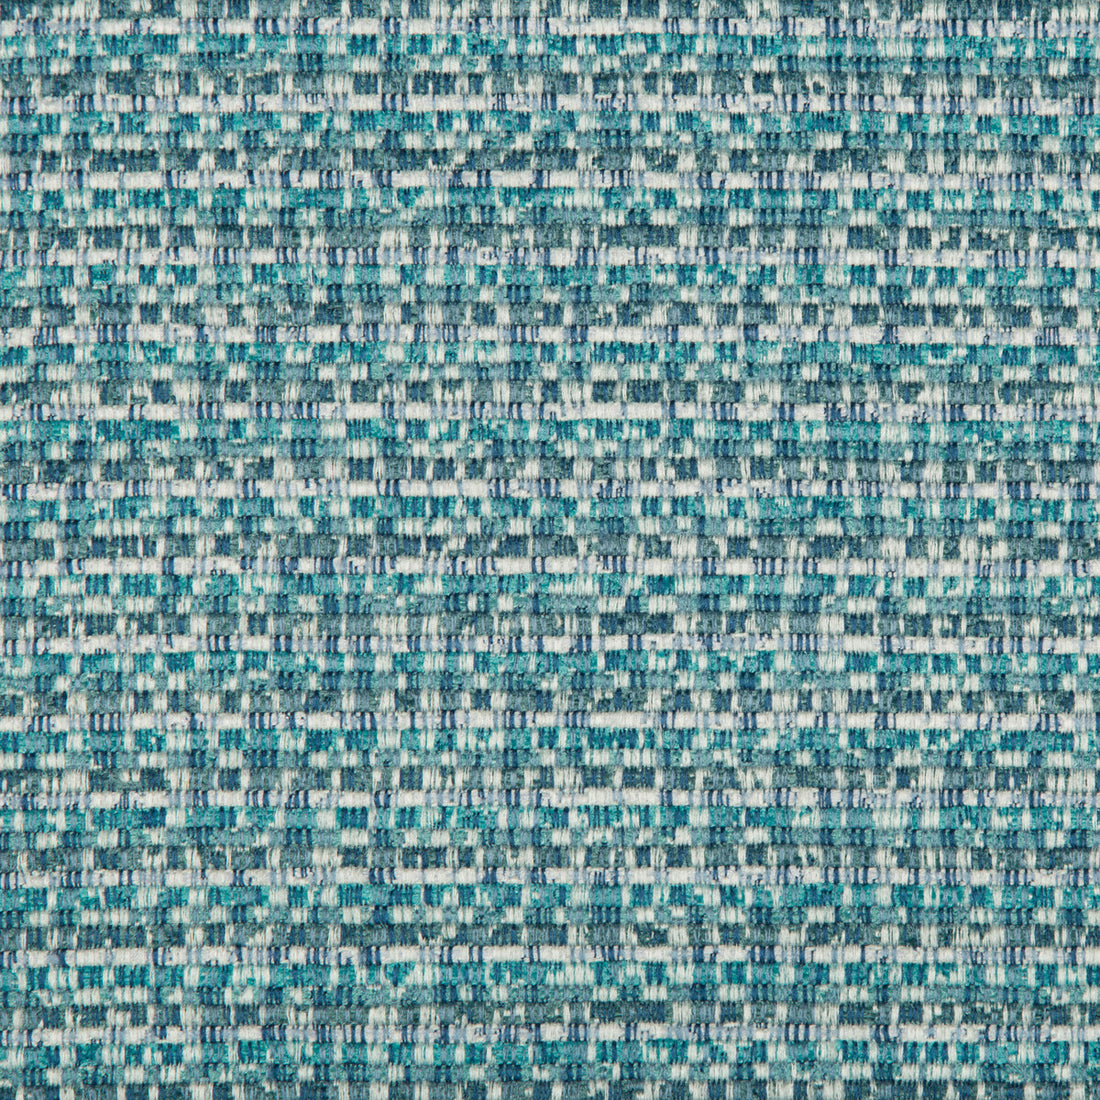 Kravet Basics fabric in 35225-15 color - pattern 35225.15.0 - by Kravet Basics